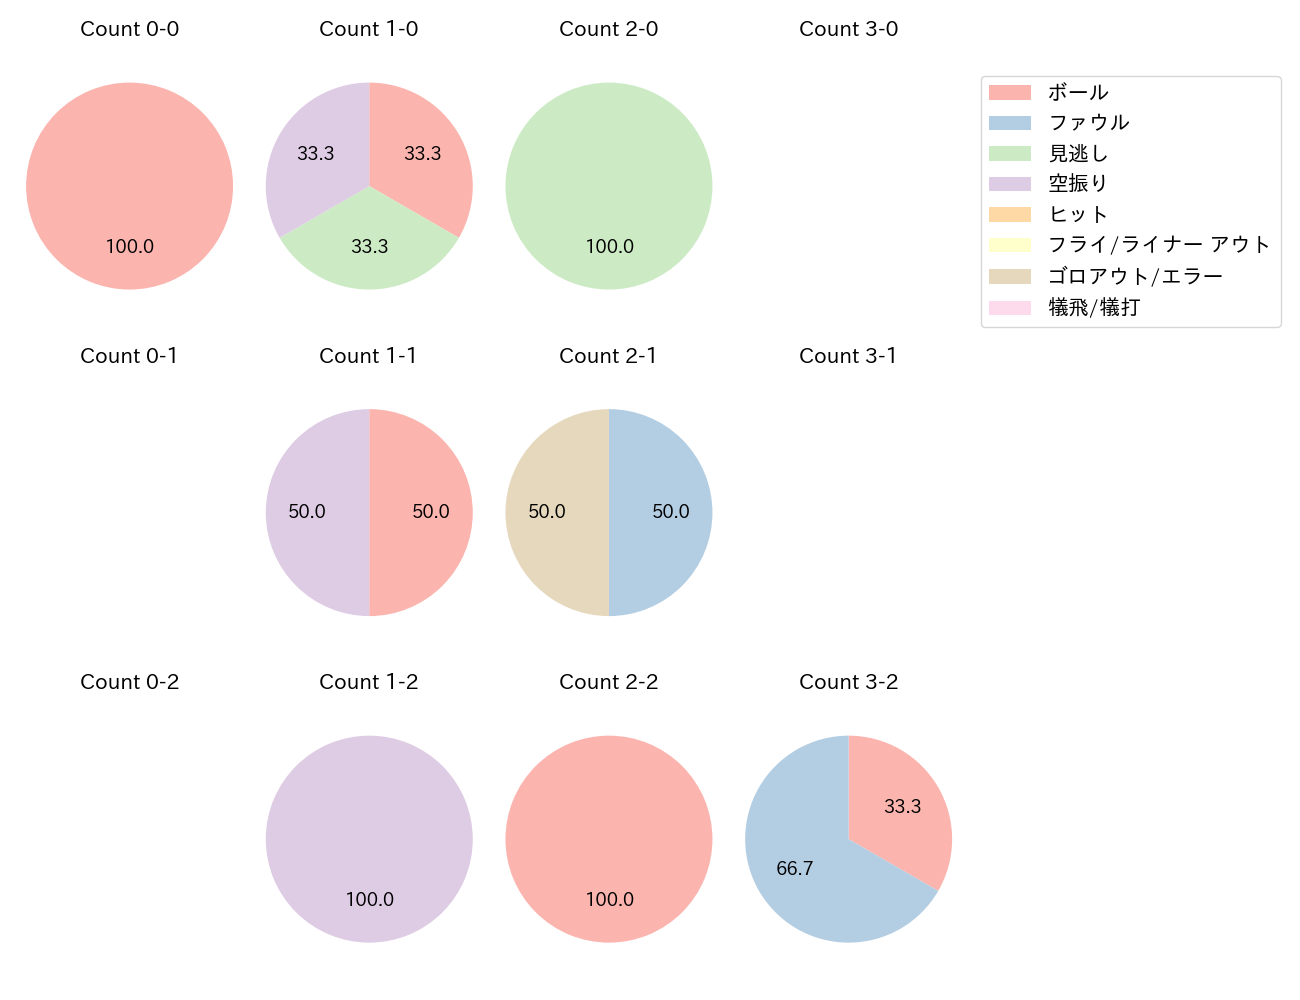 野村 大樹の球数分布(2022年9月)